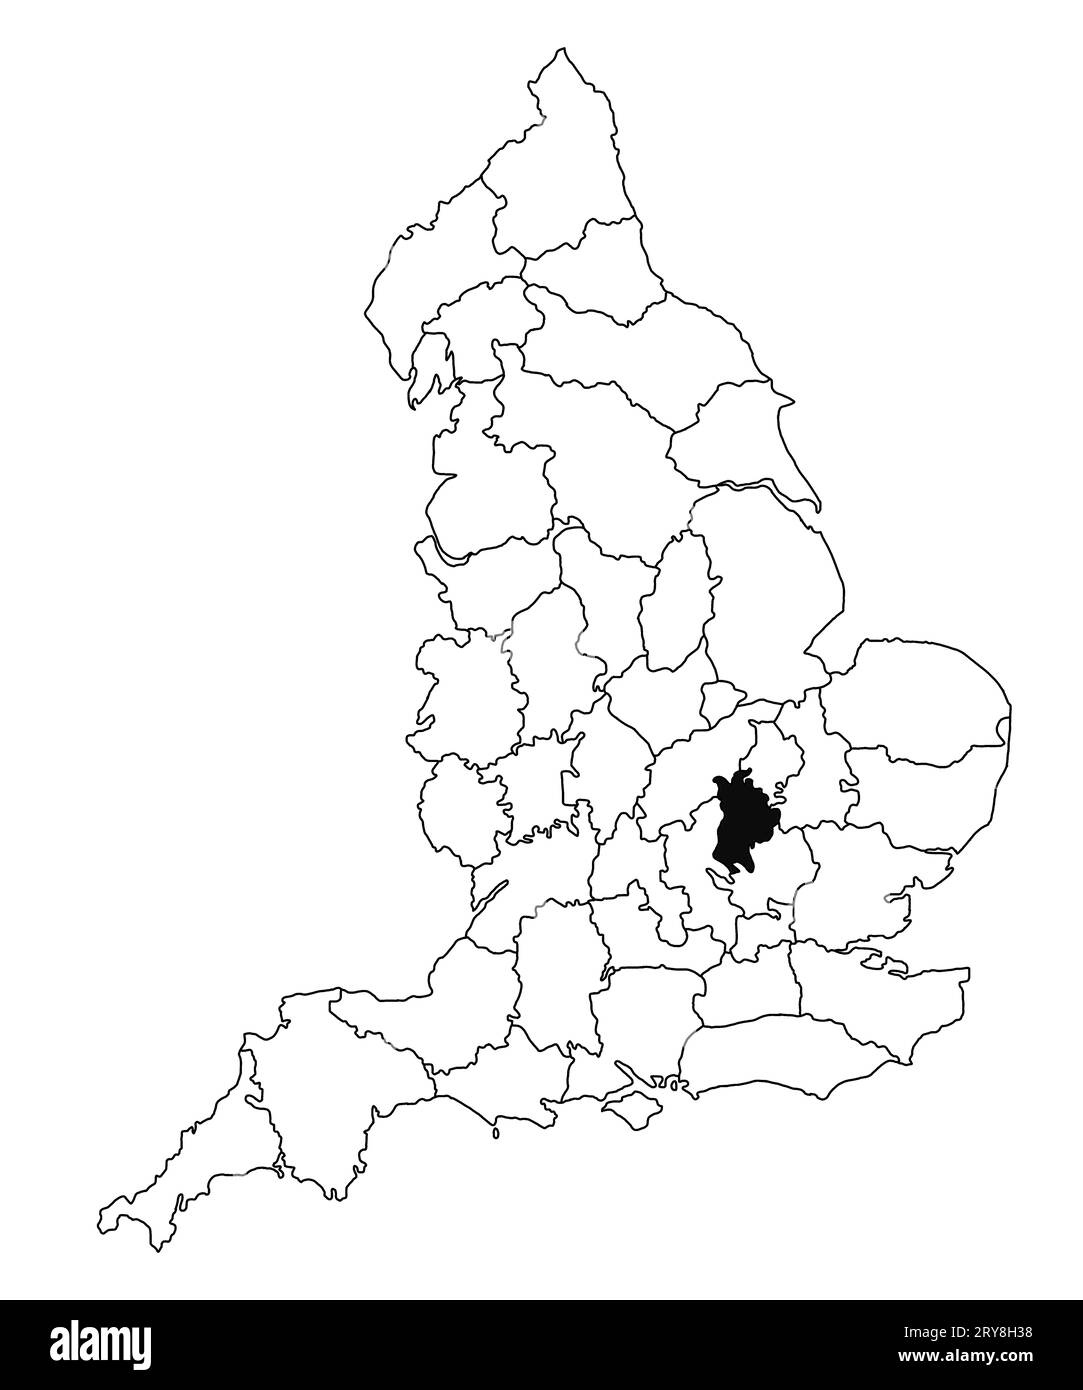 Carte du comté de Bedfordshire en Angleterre sur fond blanc. Carte du comté unique mise en évidence en noir sur la carte administrative de l'Angleterre.. United Kingdo Banque D'Images